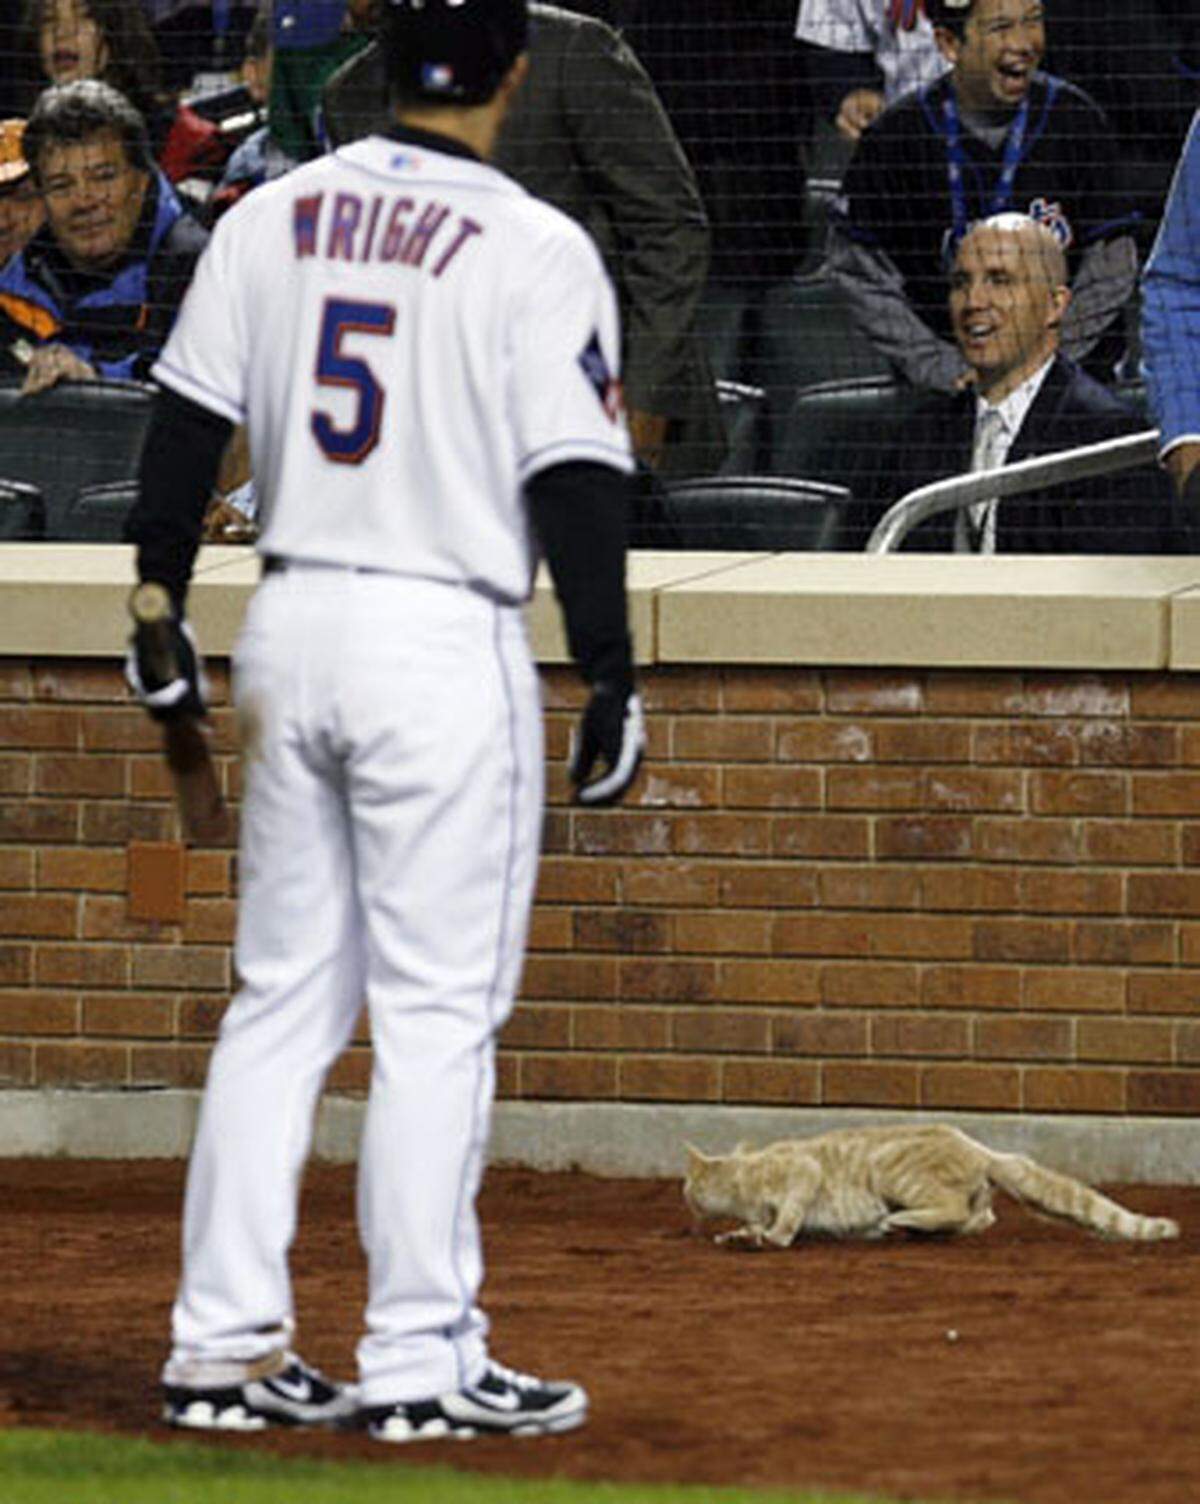 Auch Baseball-Star David Wright ist etwas skeptisch angesichts dieses tierischen Gastes. Die Situation konnte aber ohne Schläger friedlich bereinigt werden.